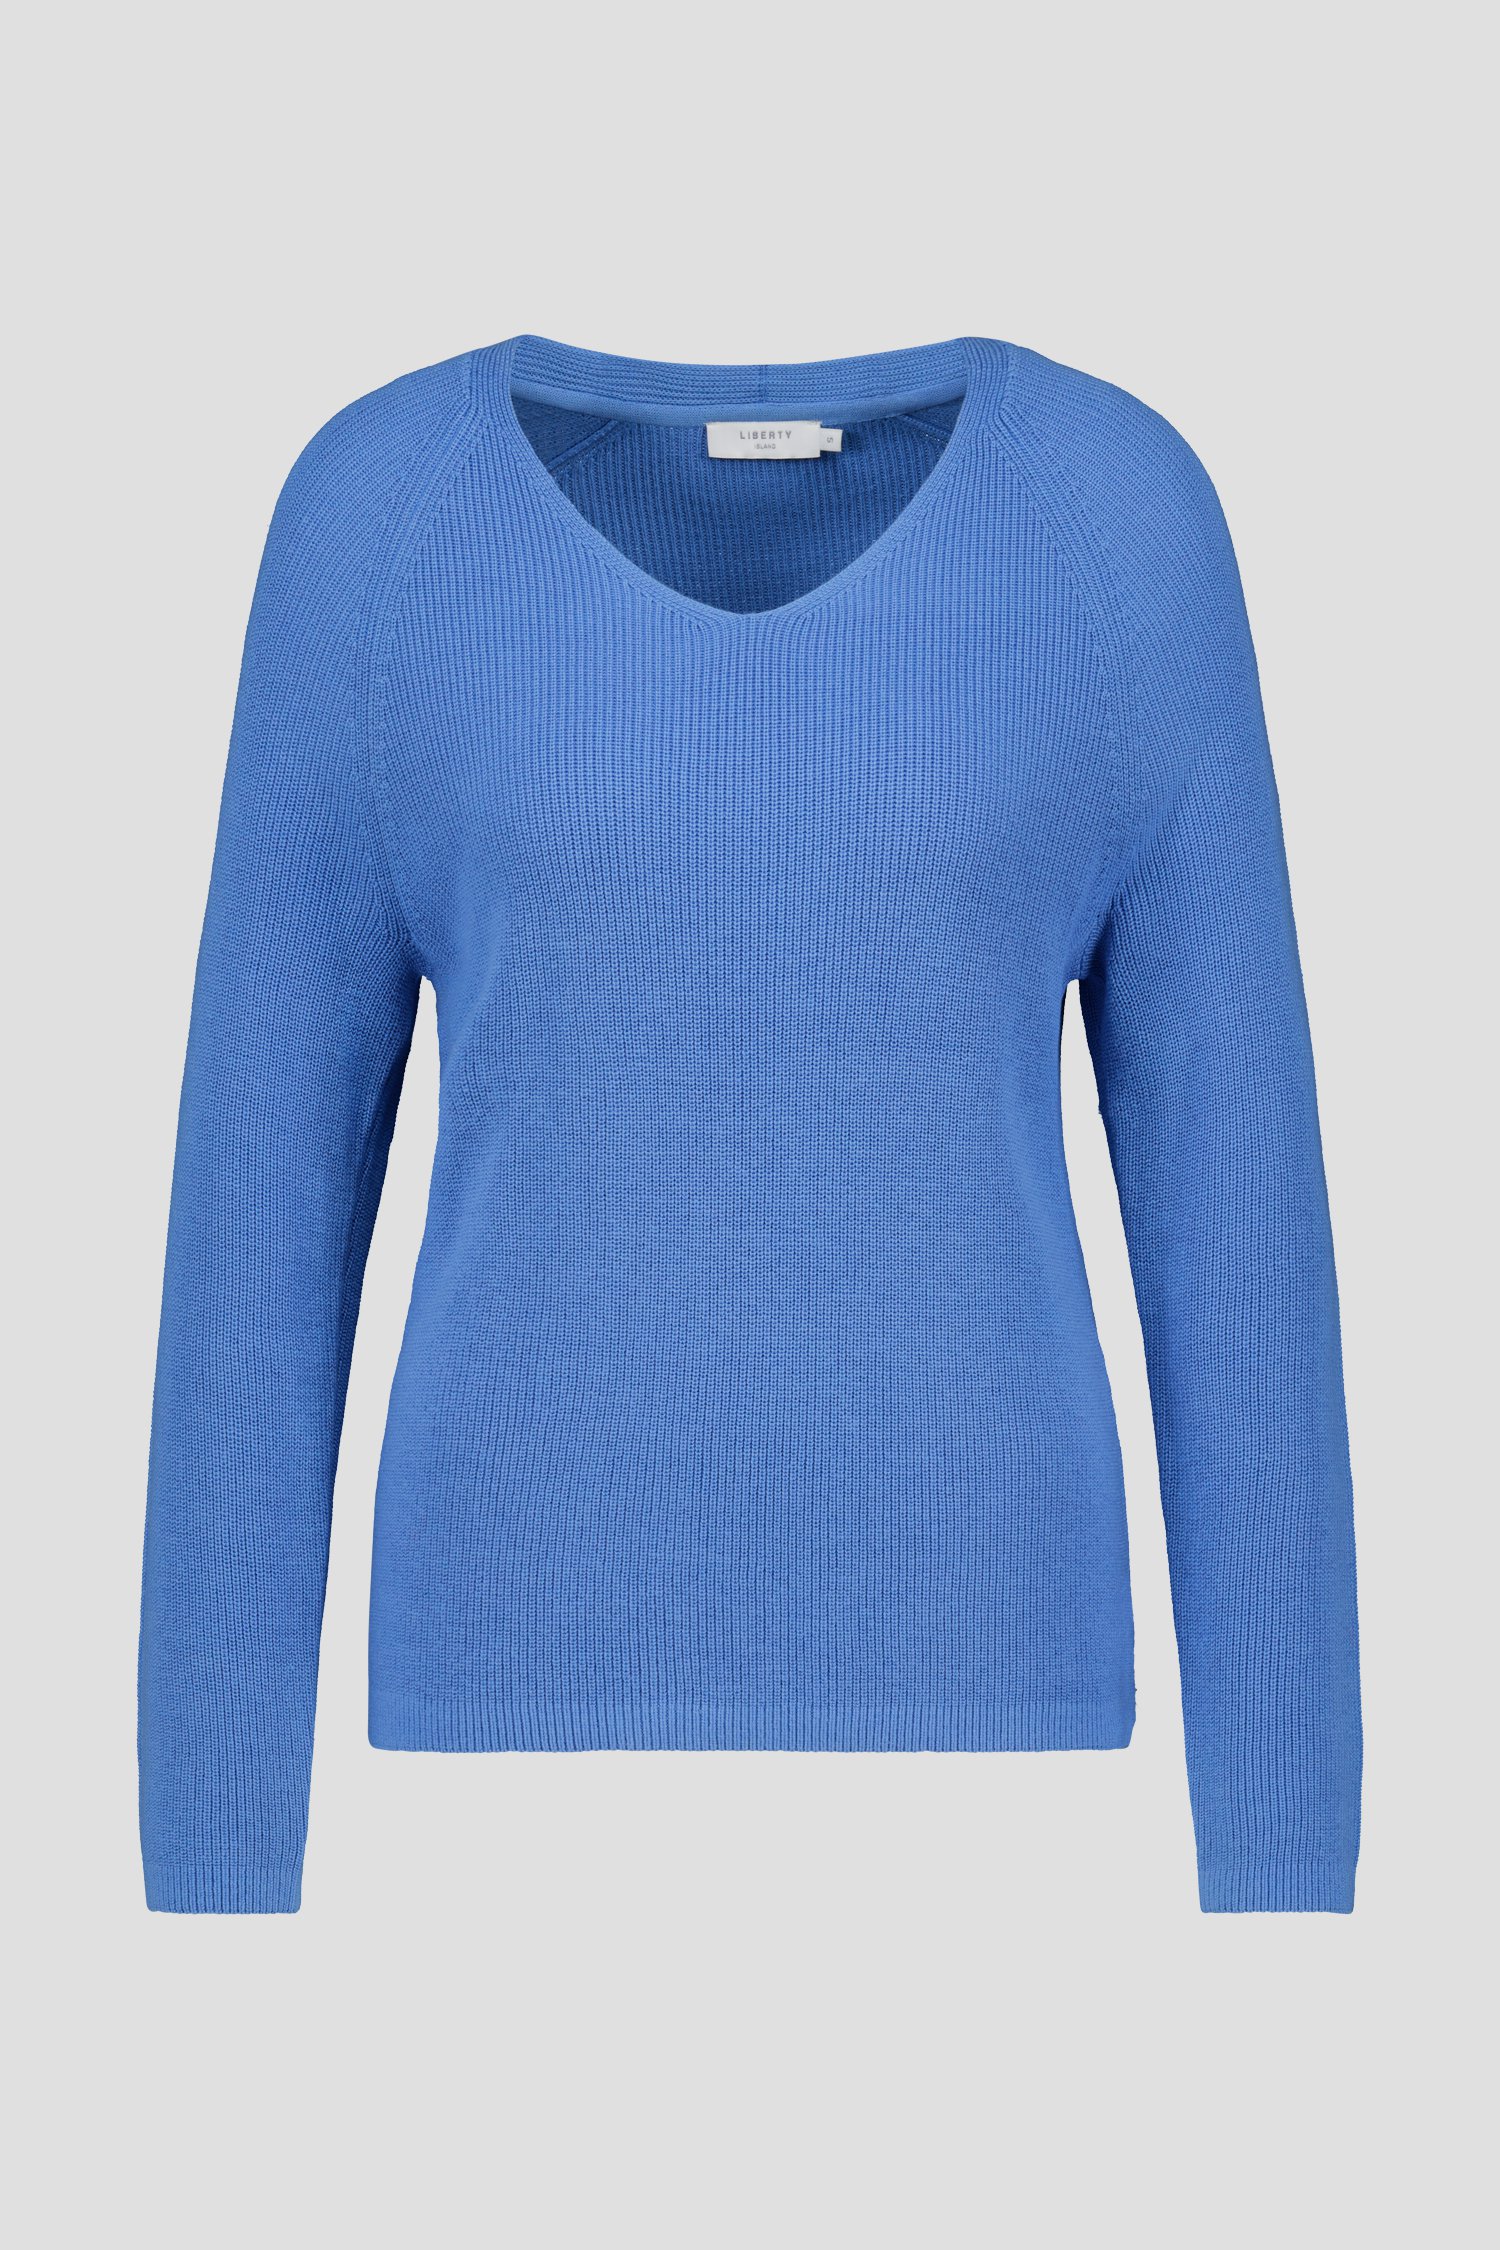 Pull bleu clair finement tricoté de Liberty Island pour Femmes